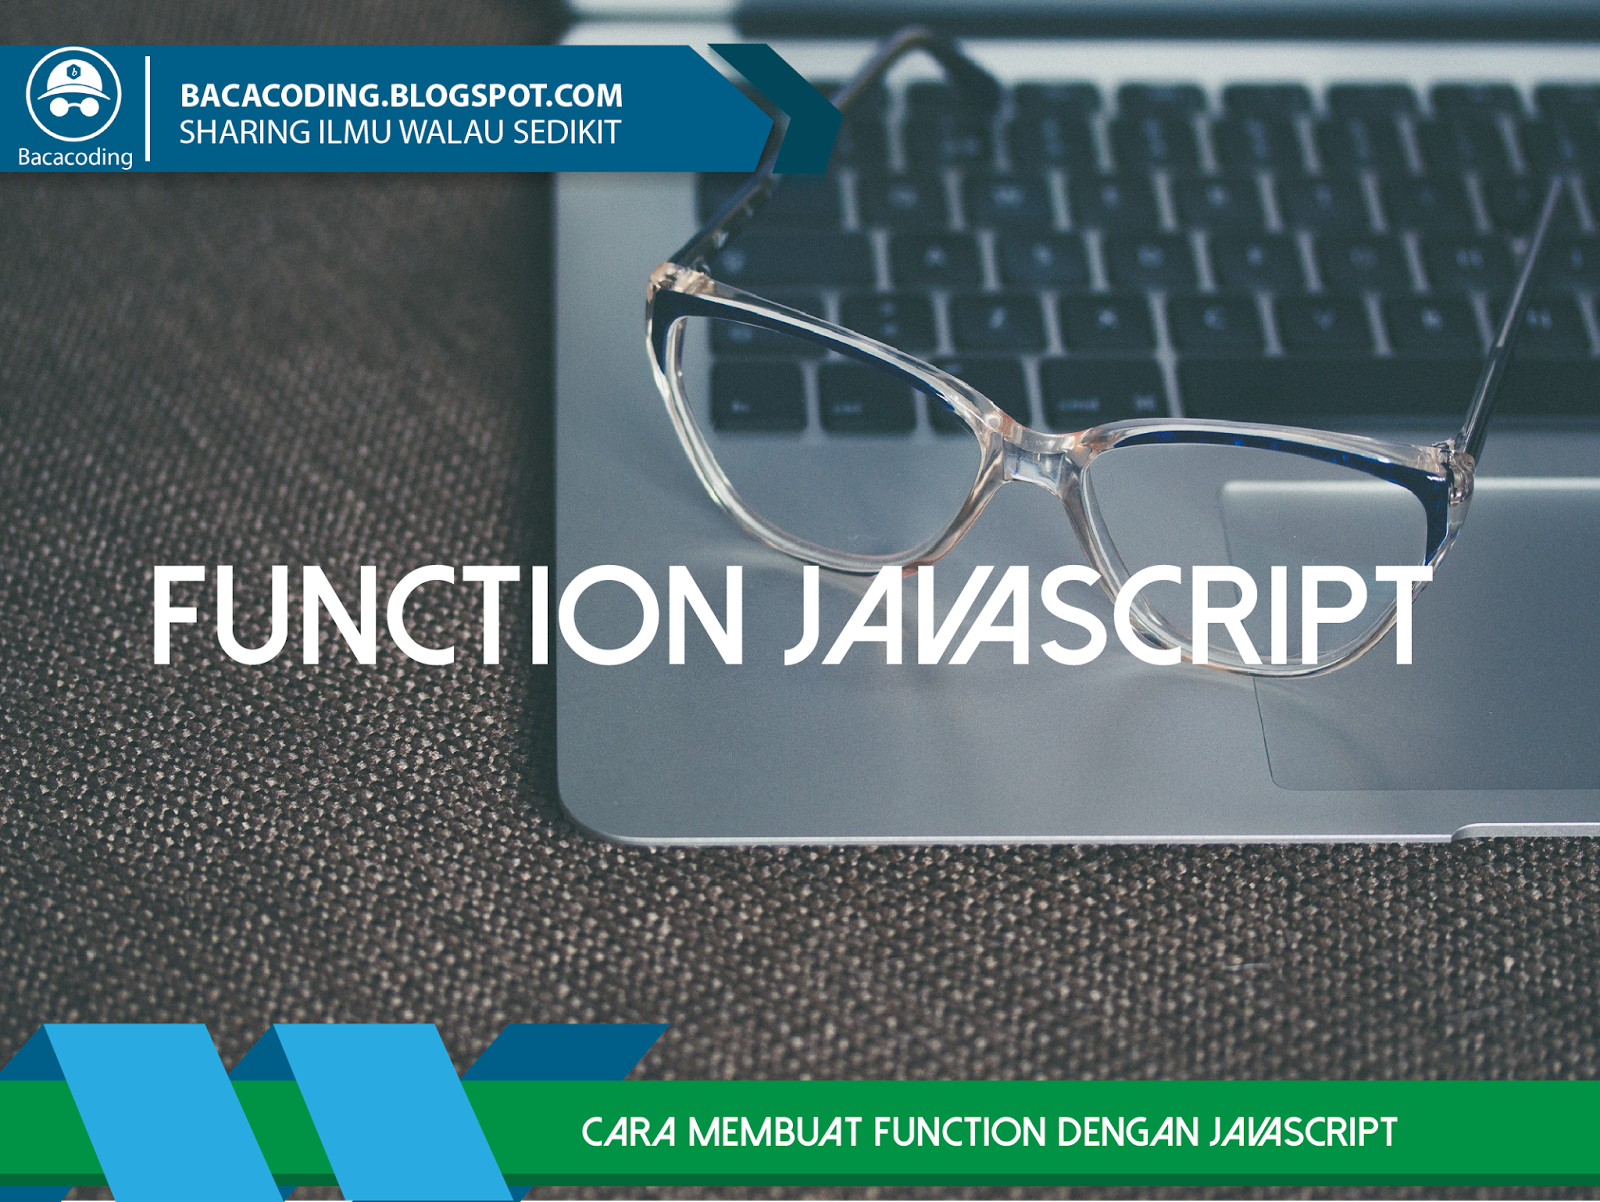 Cara Membuat Function dengan JavaScript (Function 